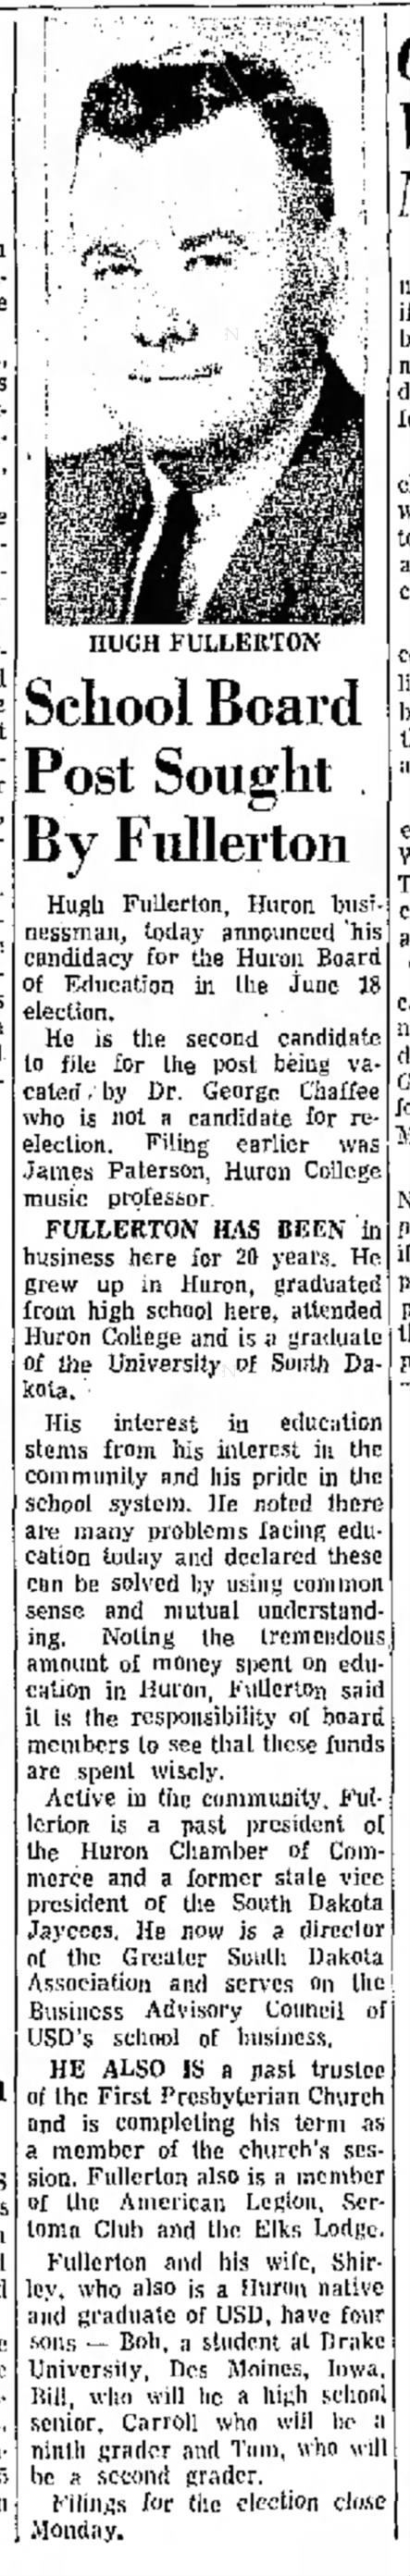 Hugh Fullerton for School Board - 1968